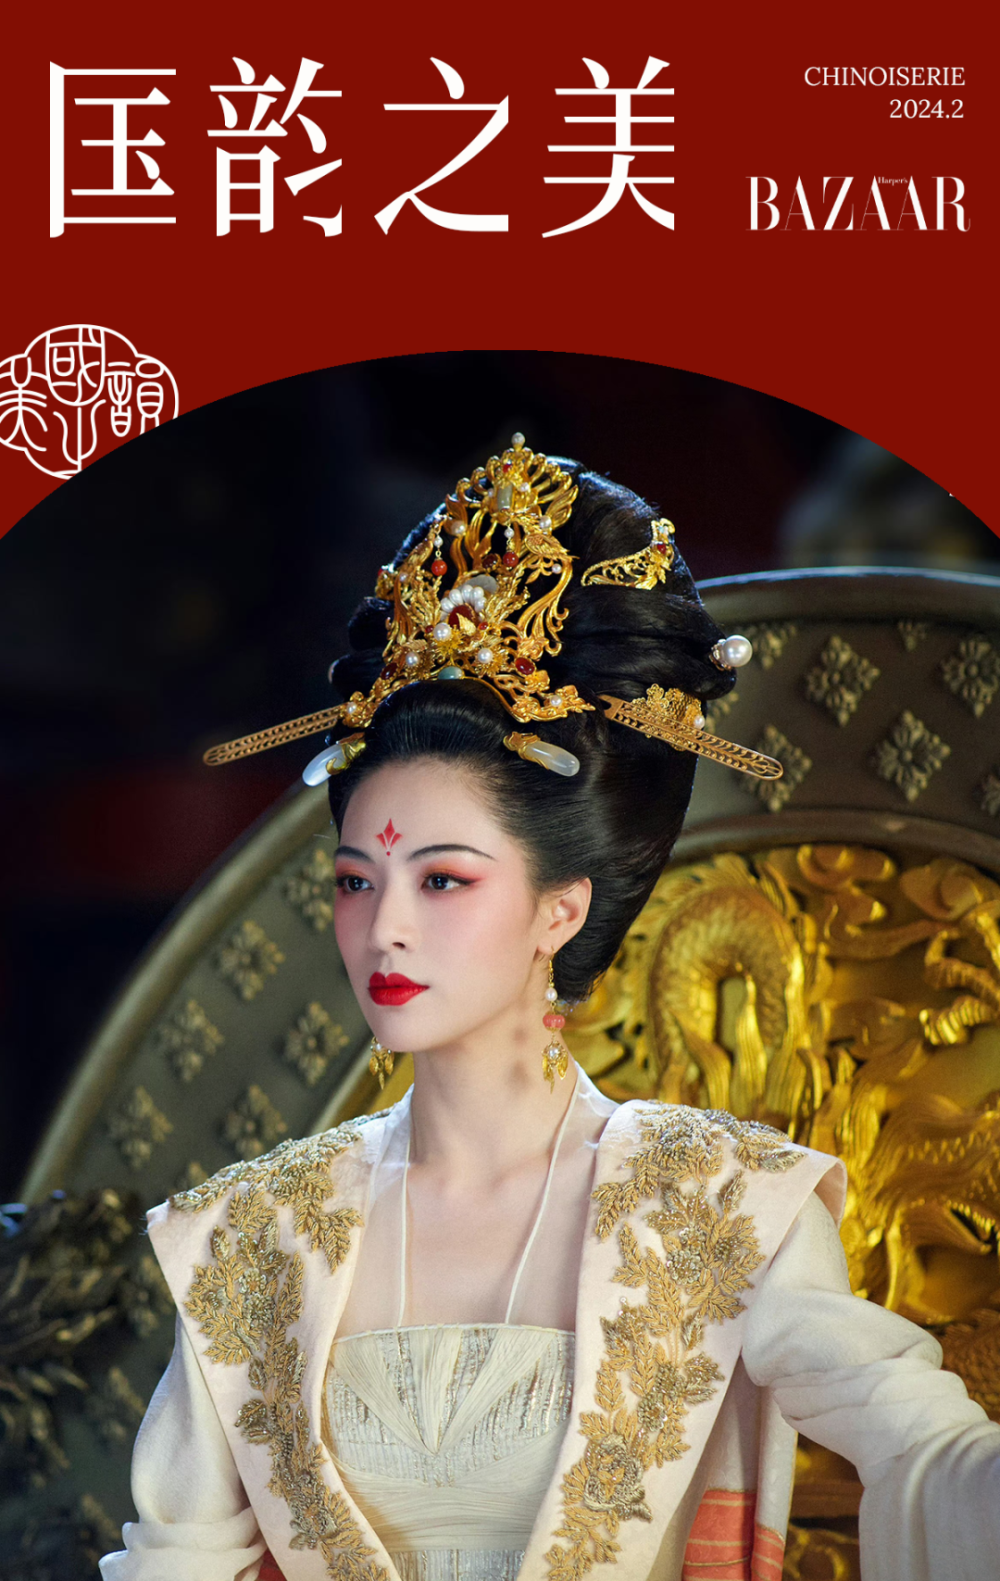 唐朝女性的潮流单品,这条石榴裙什么水平?